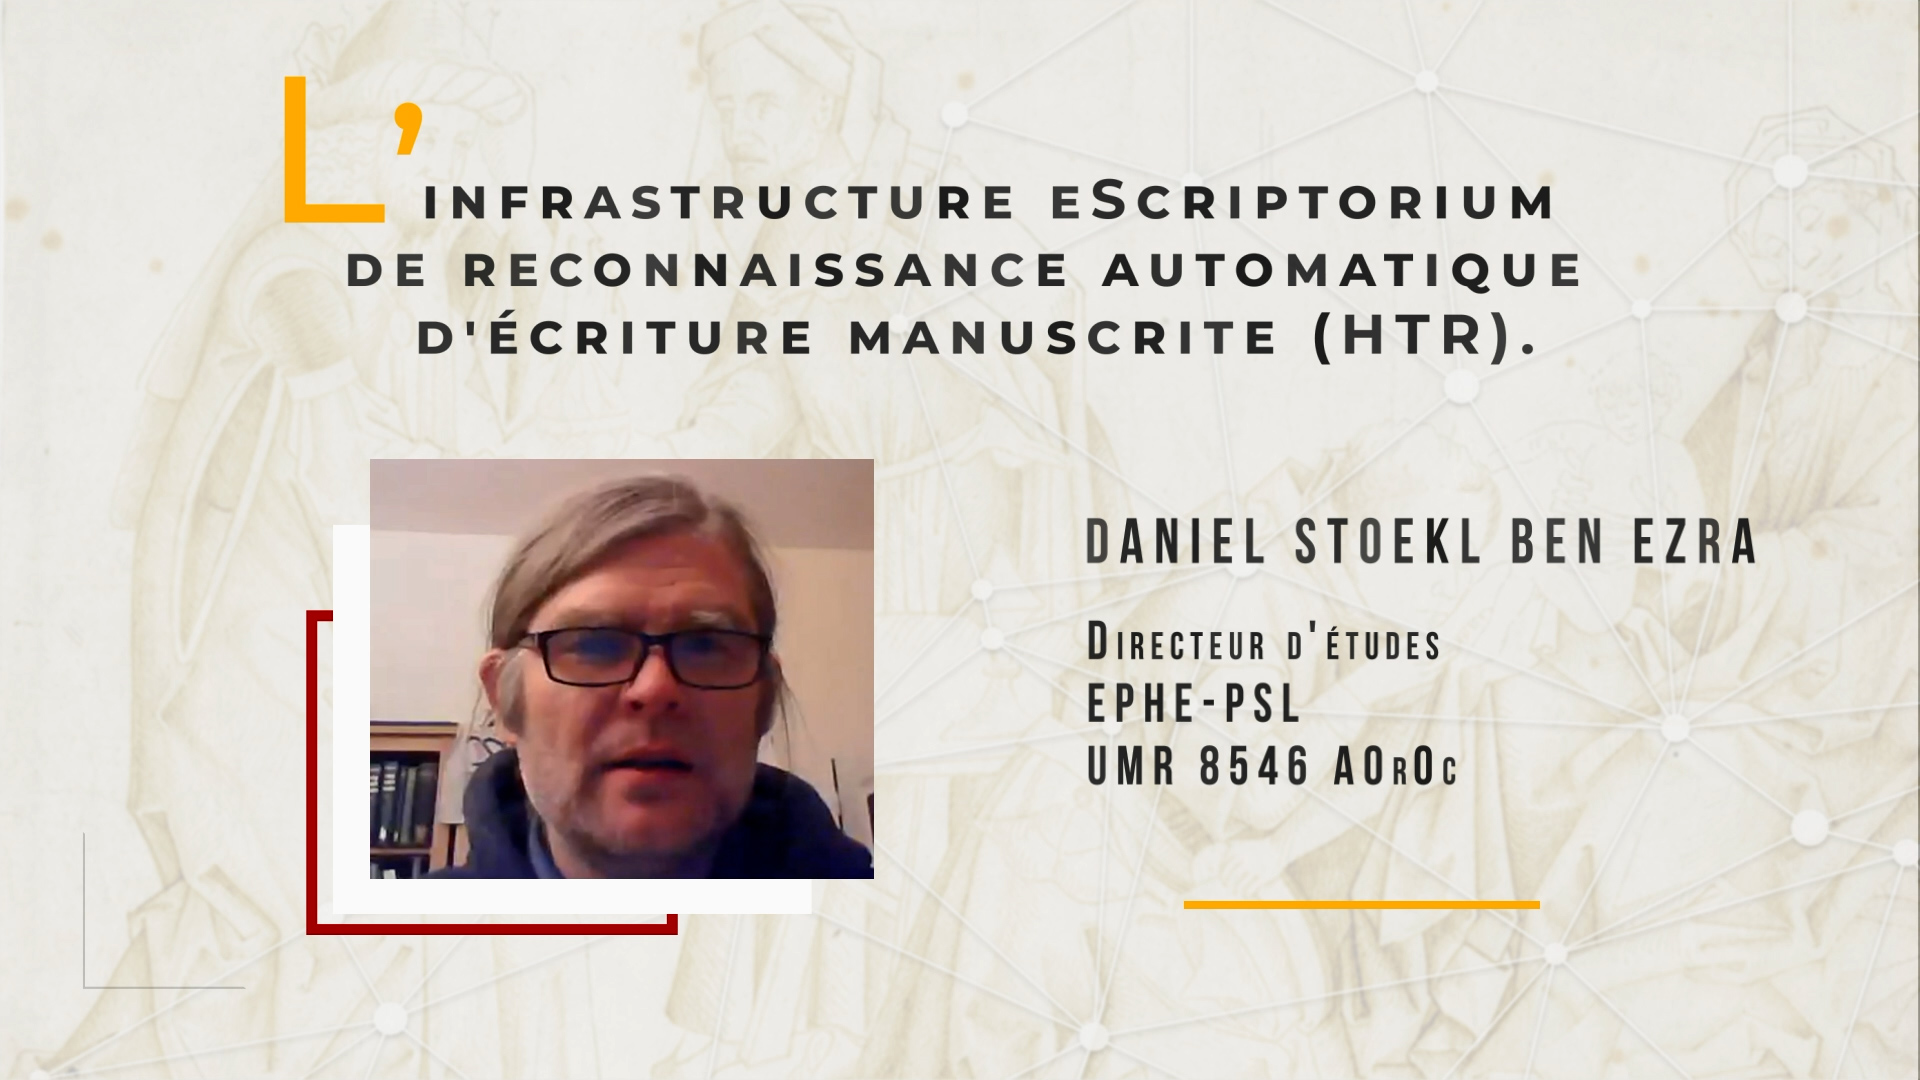 Rendez-vous IIIf 360 - Daniel Stokl Benn Ezra " L'infrastructure eScriptorium de reconnaissance automatique d'écriture manuscrite (HTR)"